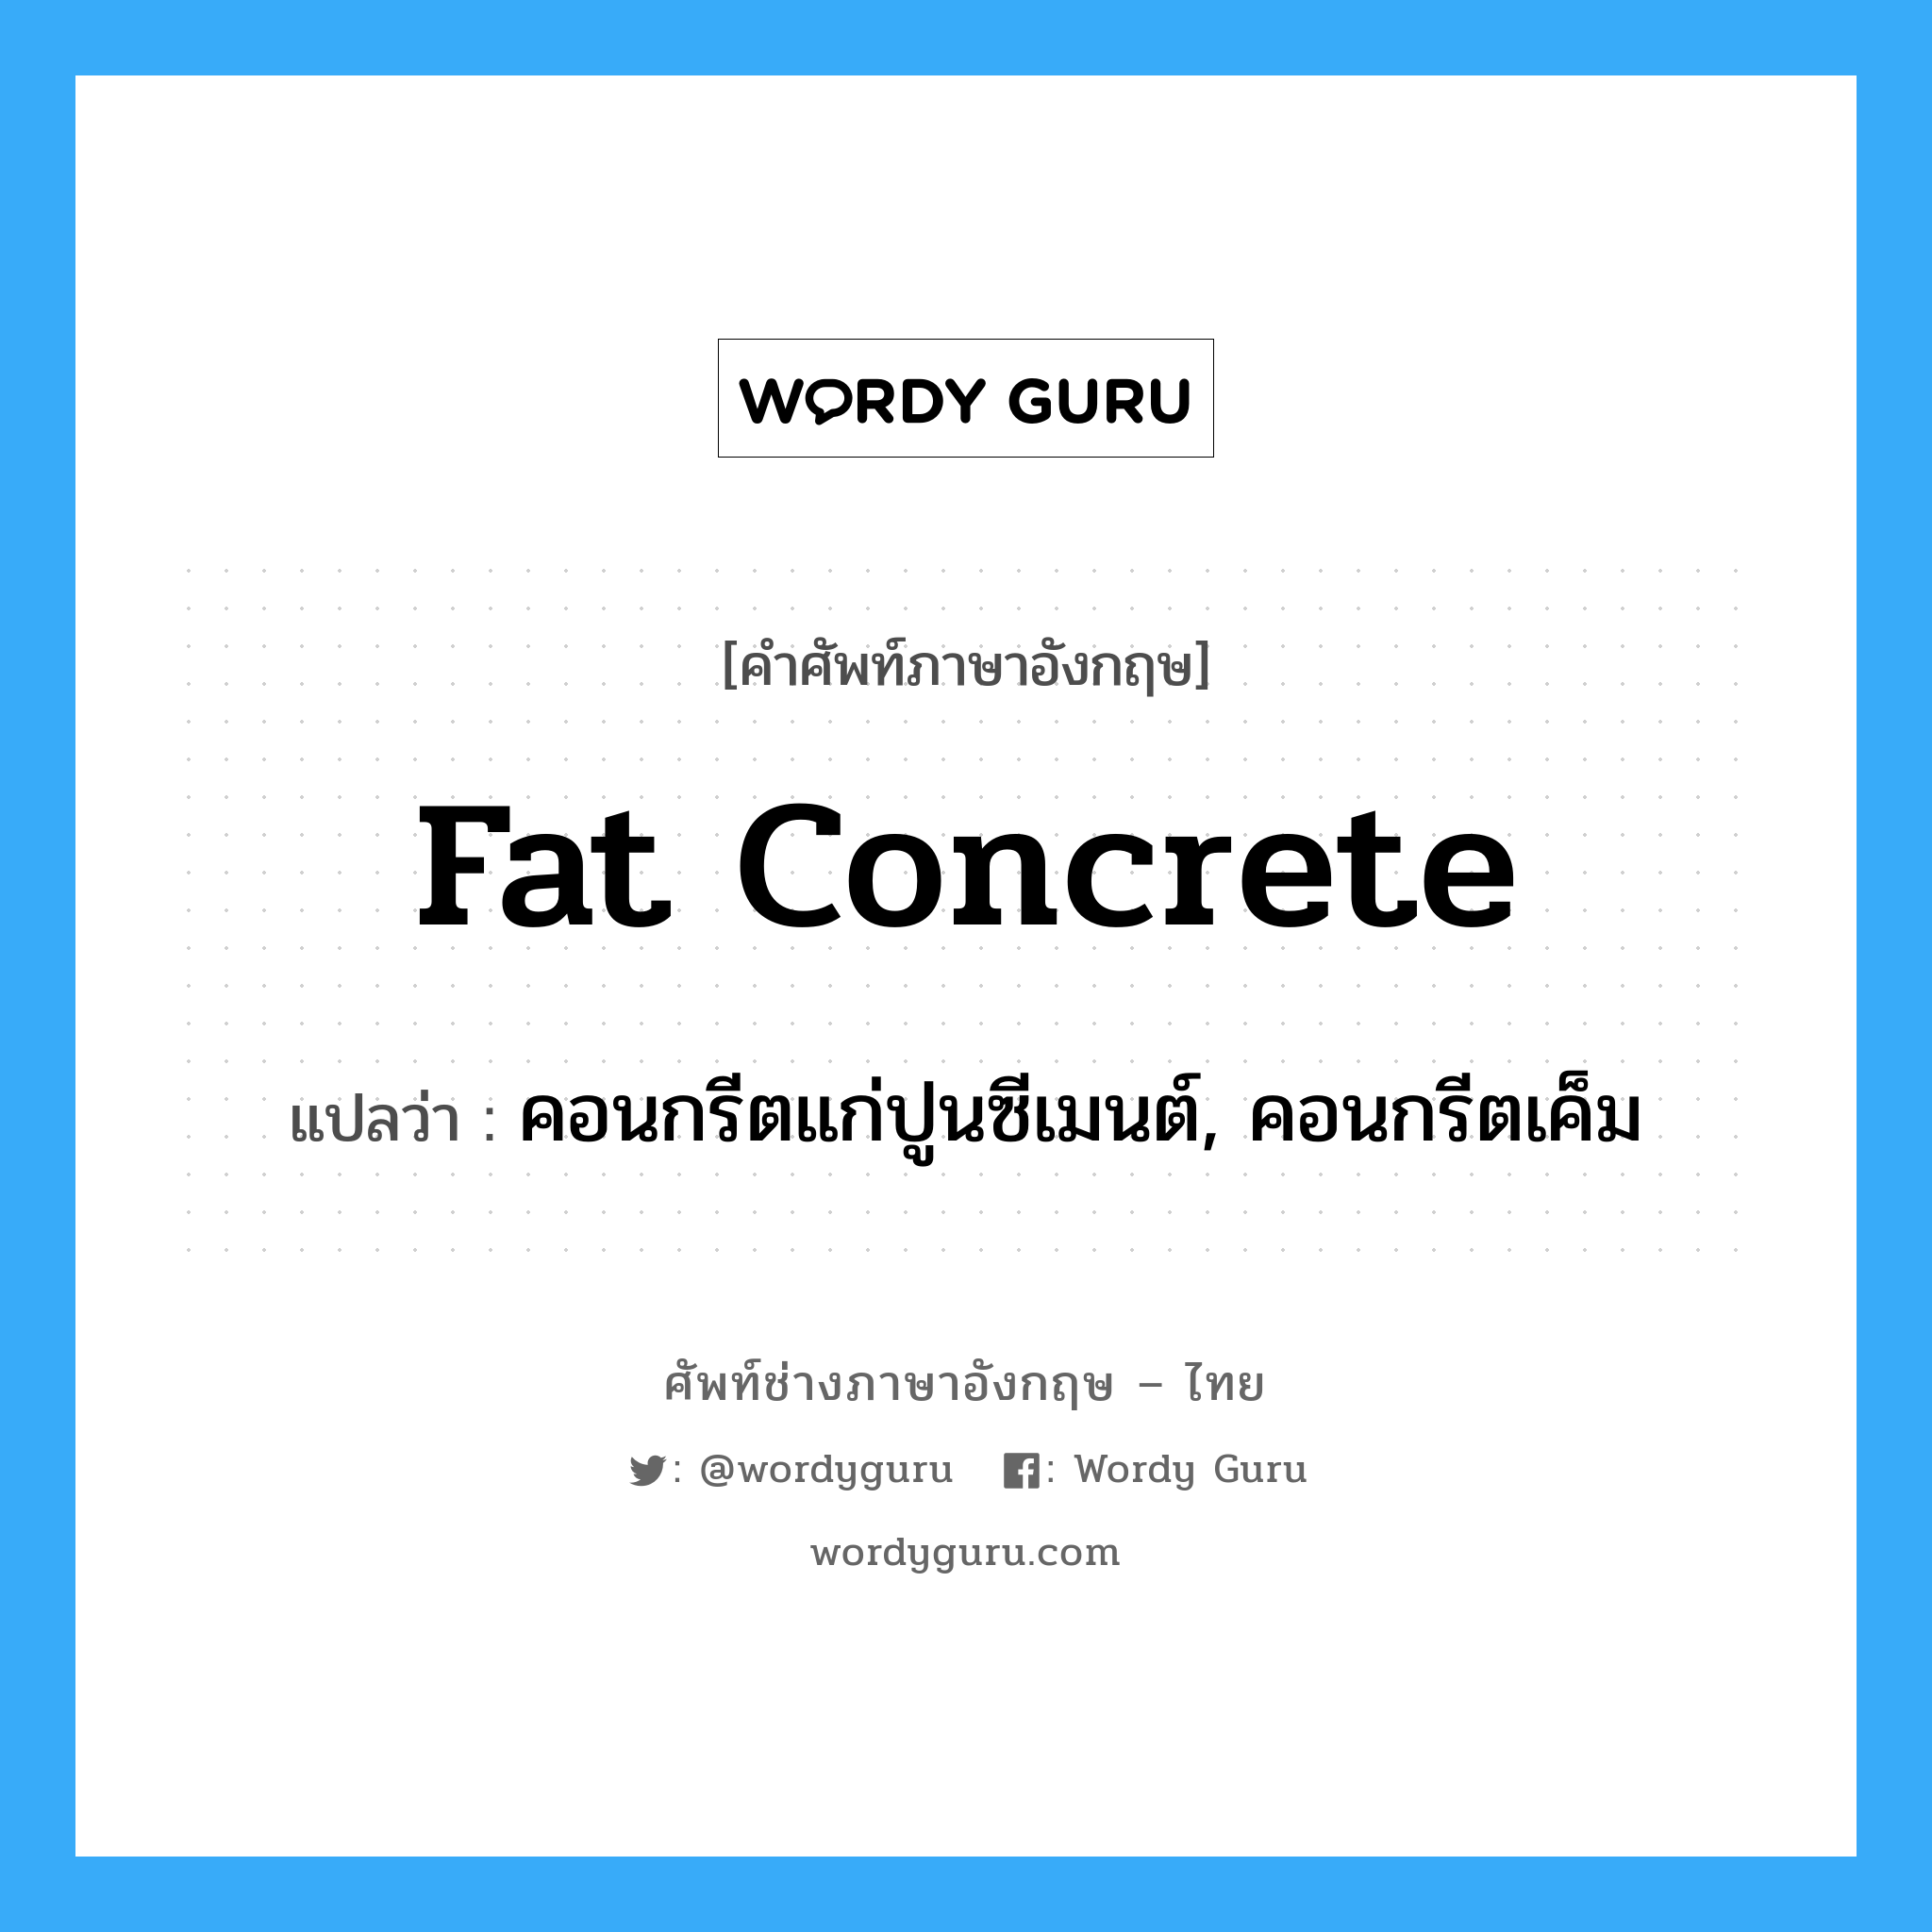 fat concrete แปลว่า?, คำศัพท์ช่างภาษาอังกฤษ - ไทย fat concrete คำศัพท์ภาษาอังกฤษ fat concrete แปลว่า คอนกรีตแก่ปูนซีเมนต์, คอนกรีตเค็ม